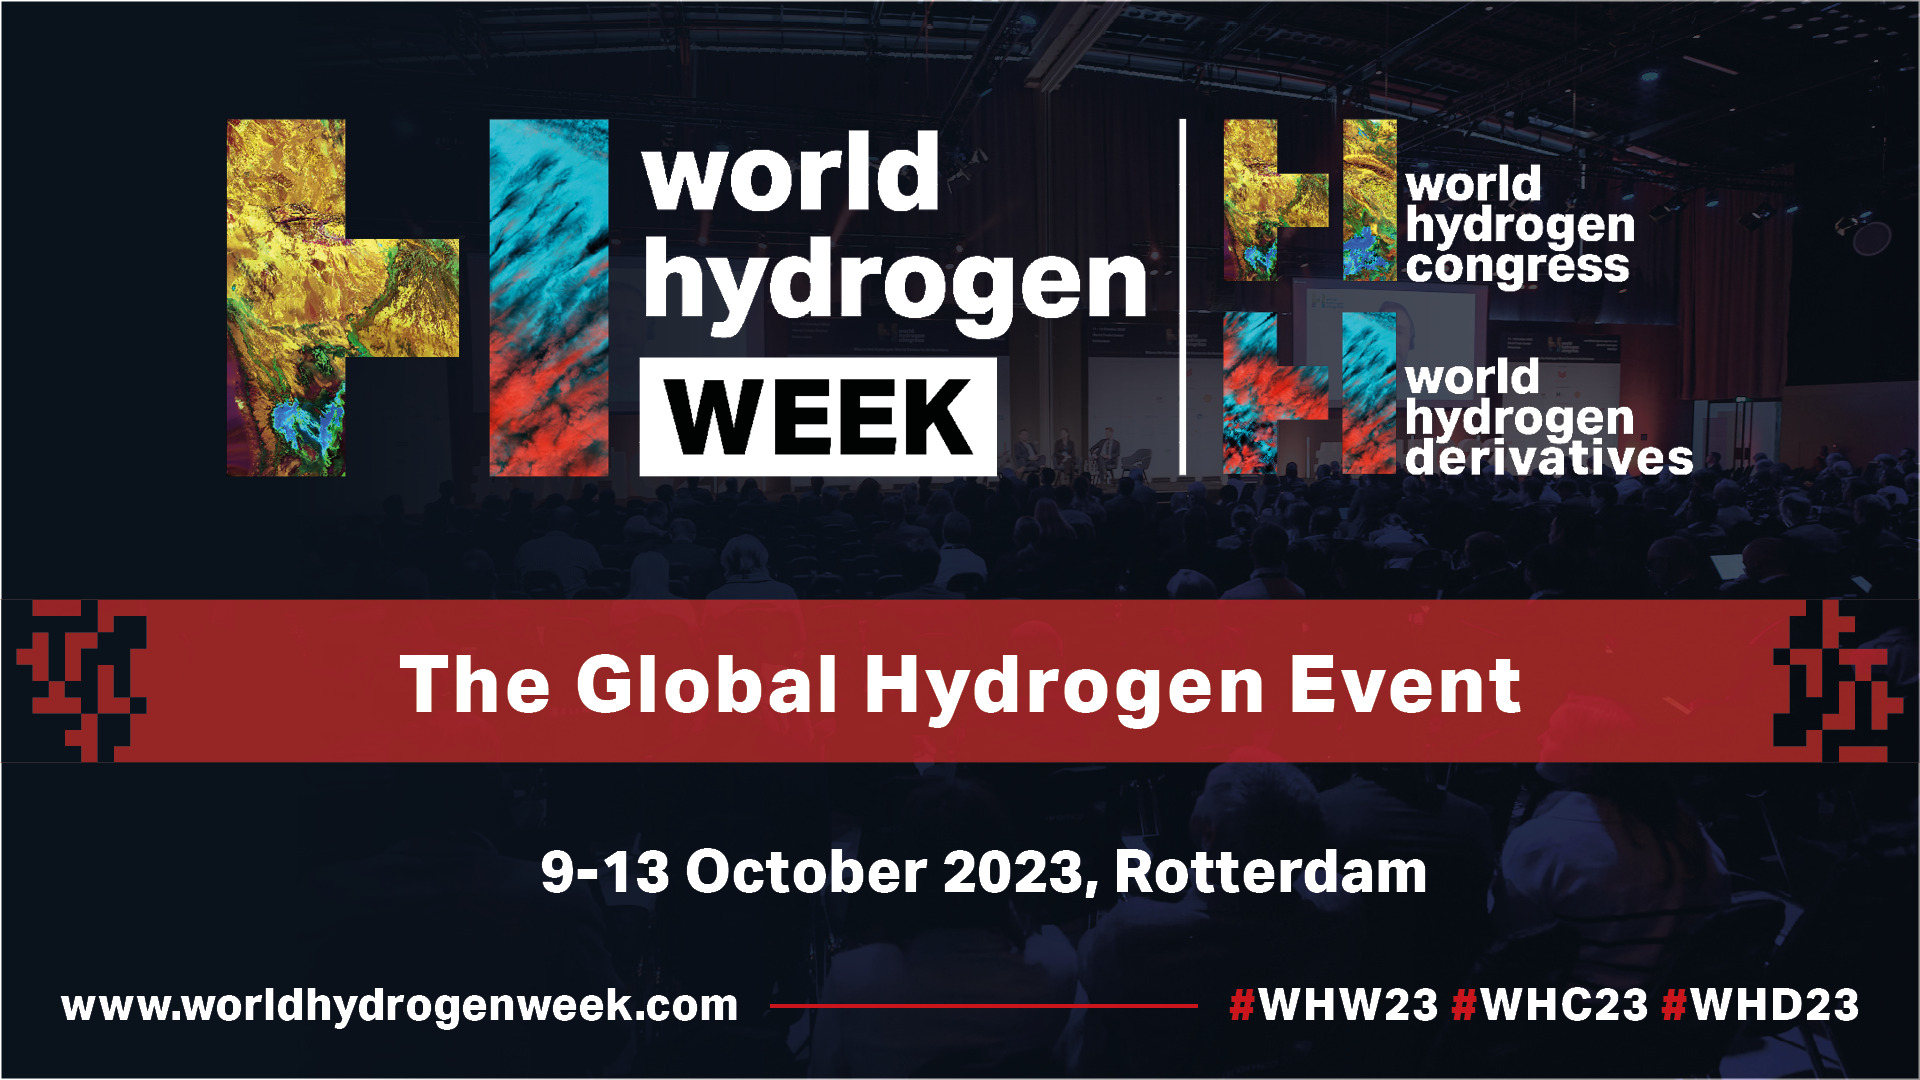 World Hydrogen Congress returns for 2023 as part of World Hydrogen Week